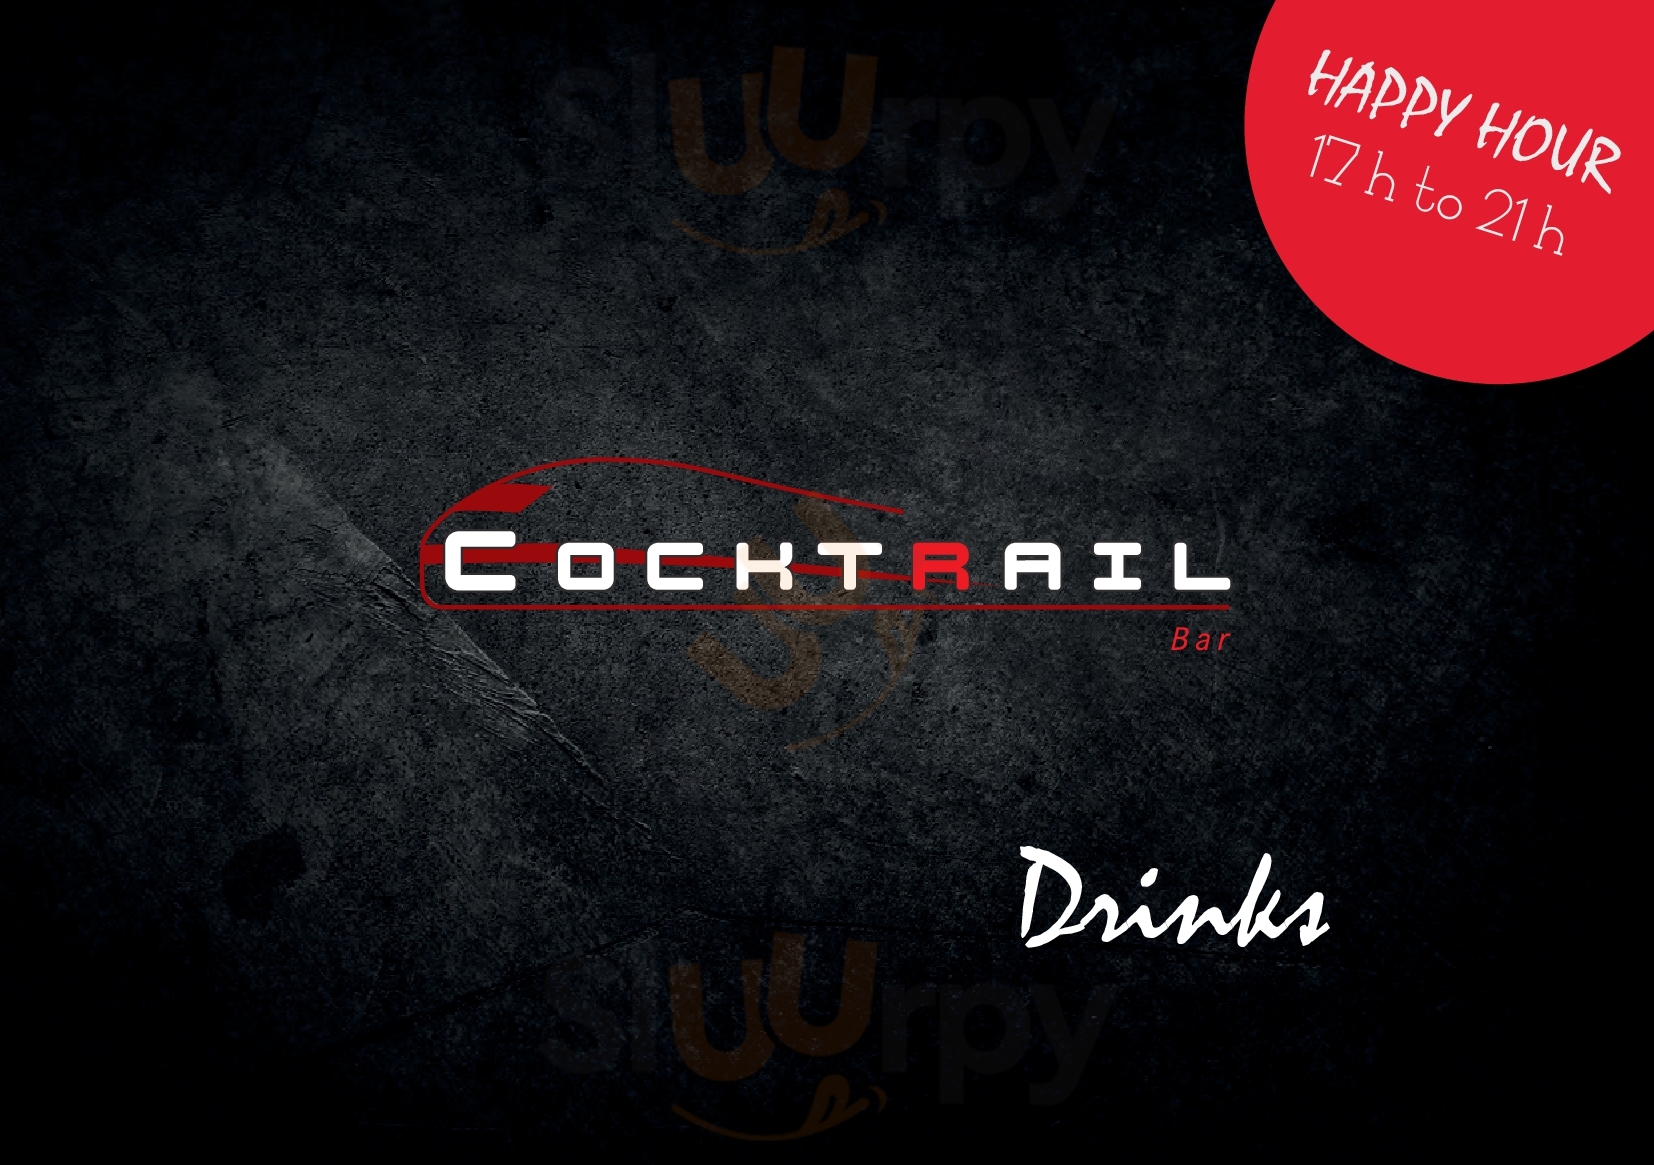 Cocktrail Bar Hamburg Menu - 1